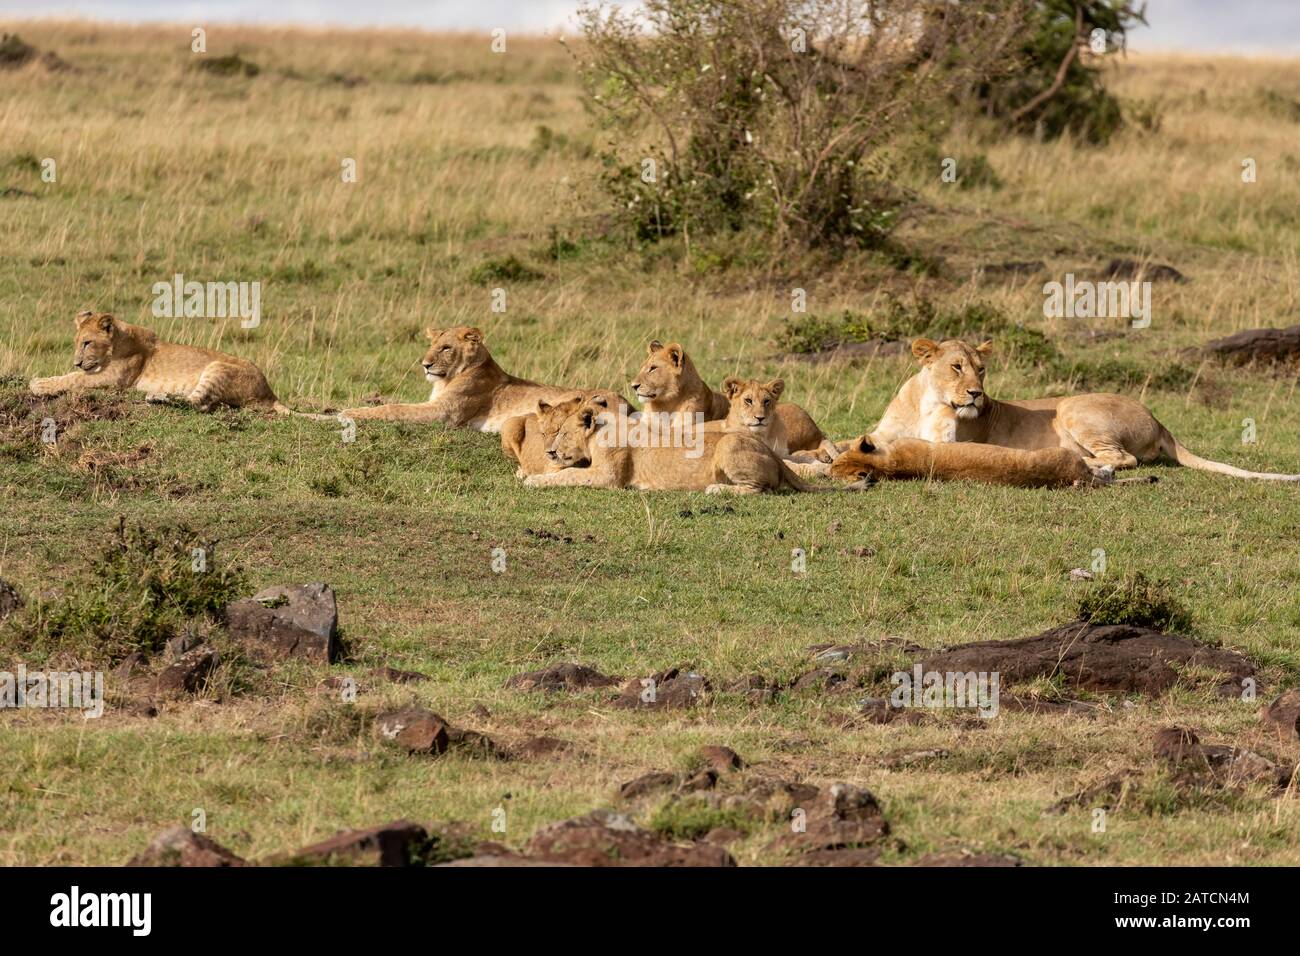 Lion d'Afrique (Panthera leo) fierté de se reposer sur la savane à Mara North Conservancy, au Kenya Banque D'Images